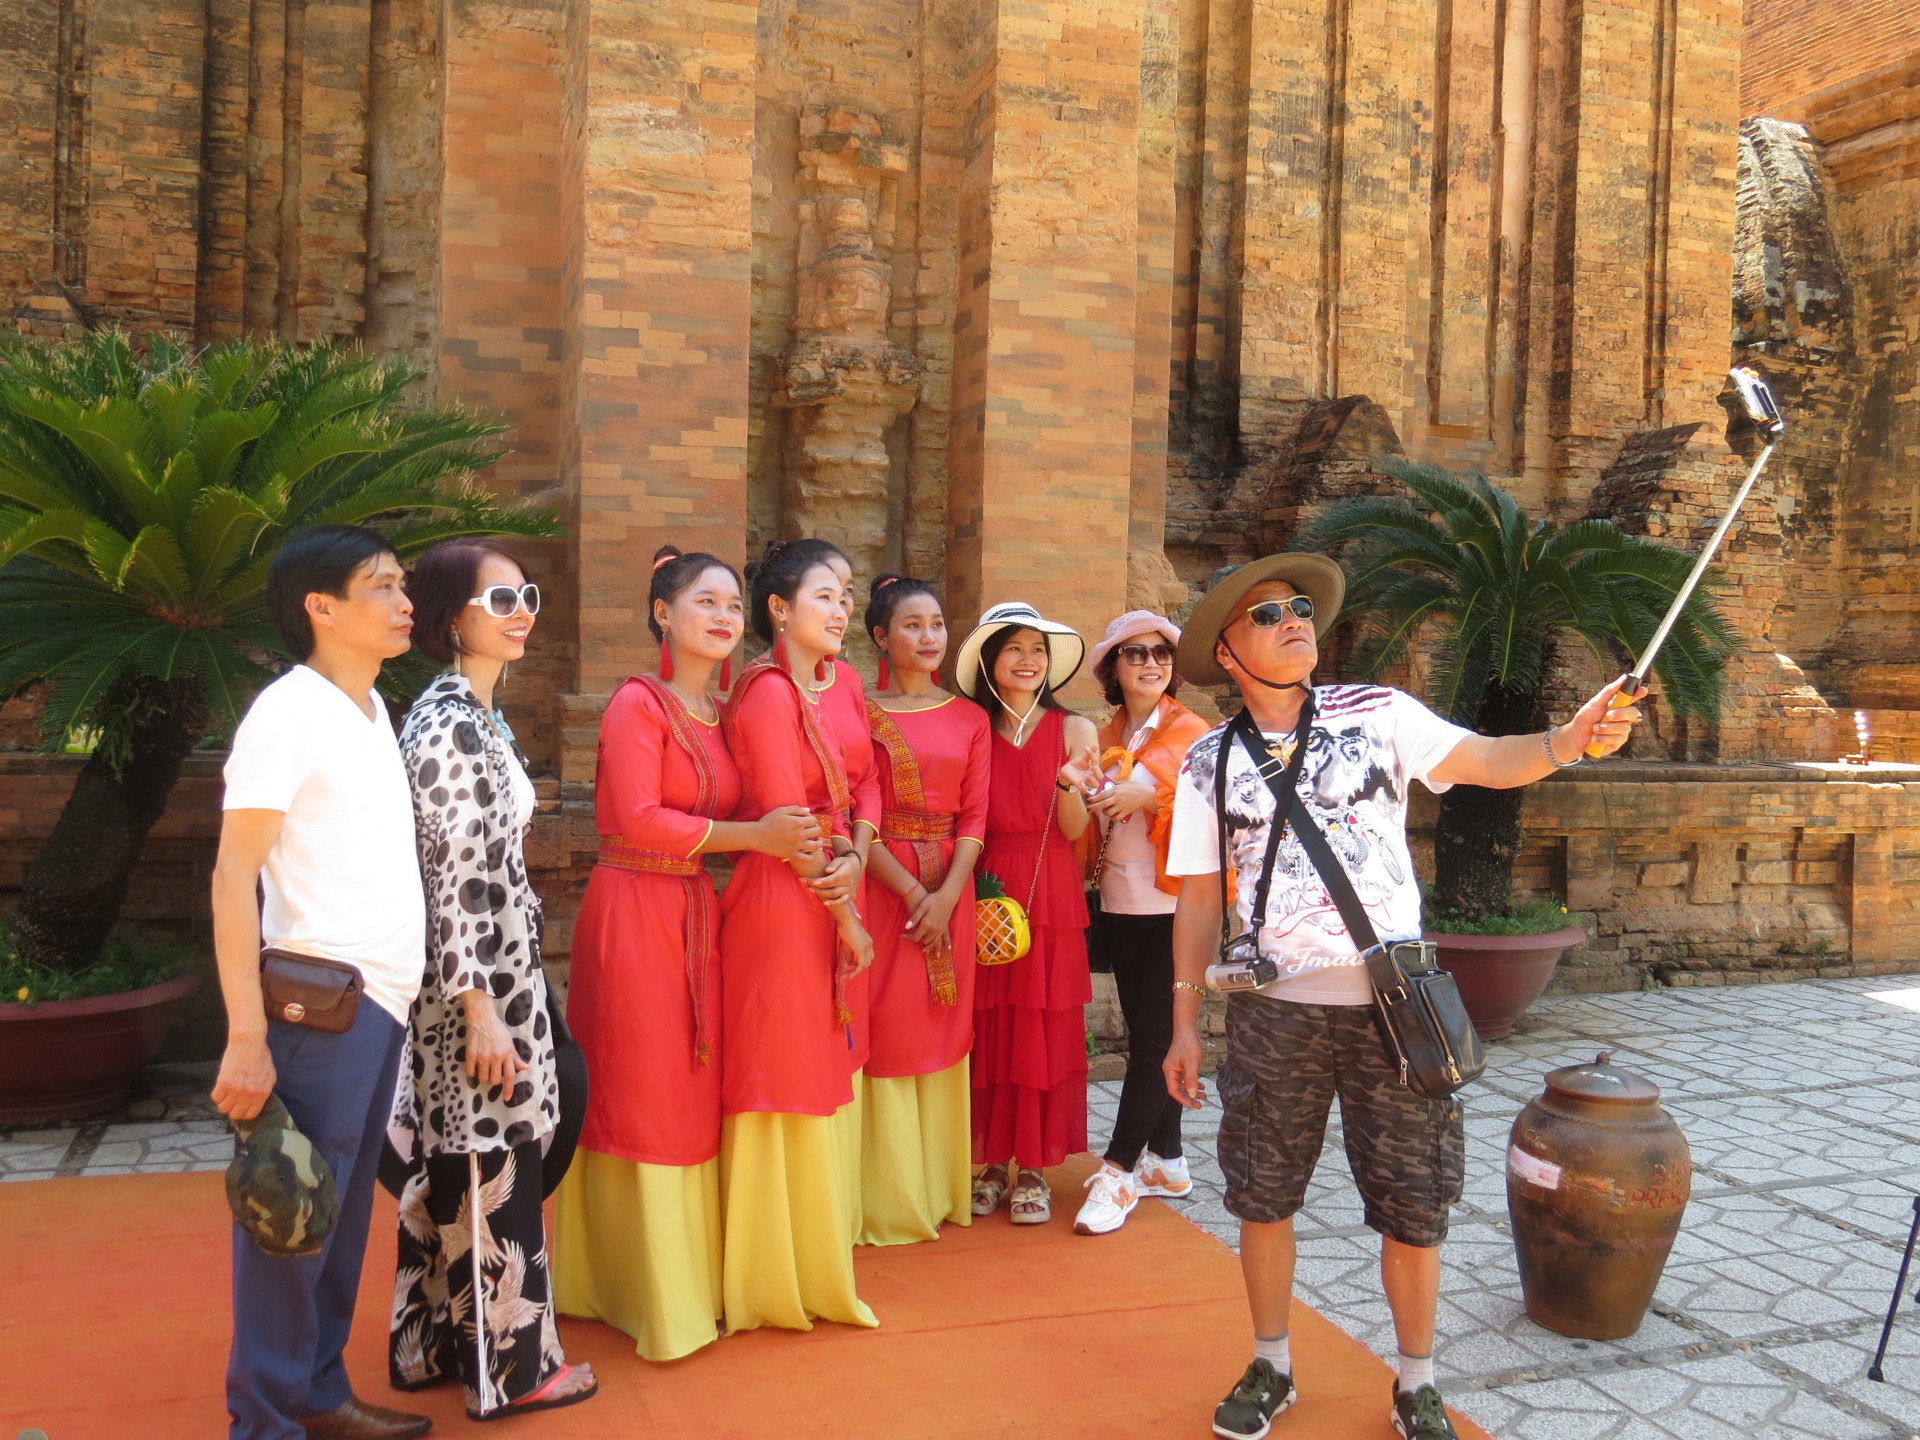 Khách du lịch chụp ảnh lưu niệm với các diễn viên biểu diễn các điệu múa truyền thống của dân tộc Chăm ở Khu di tích Tháp Bà Ponagar.